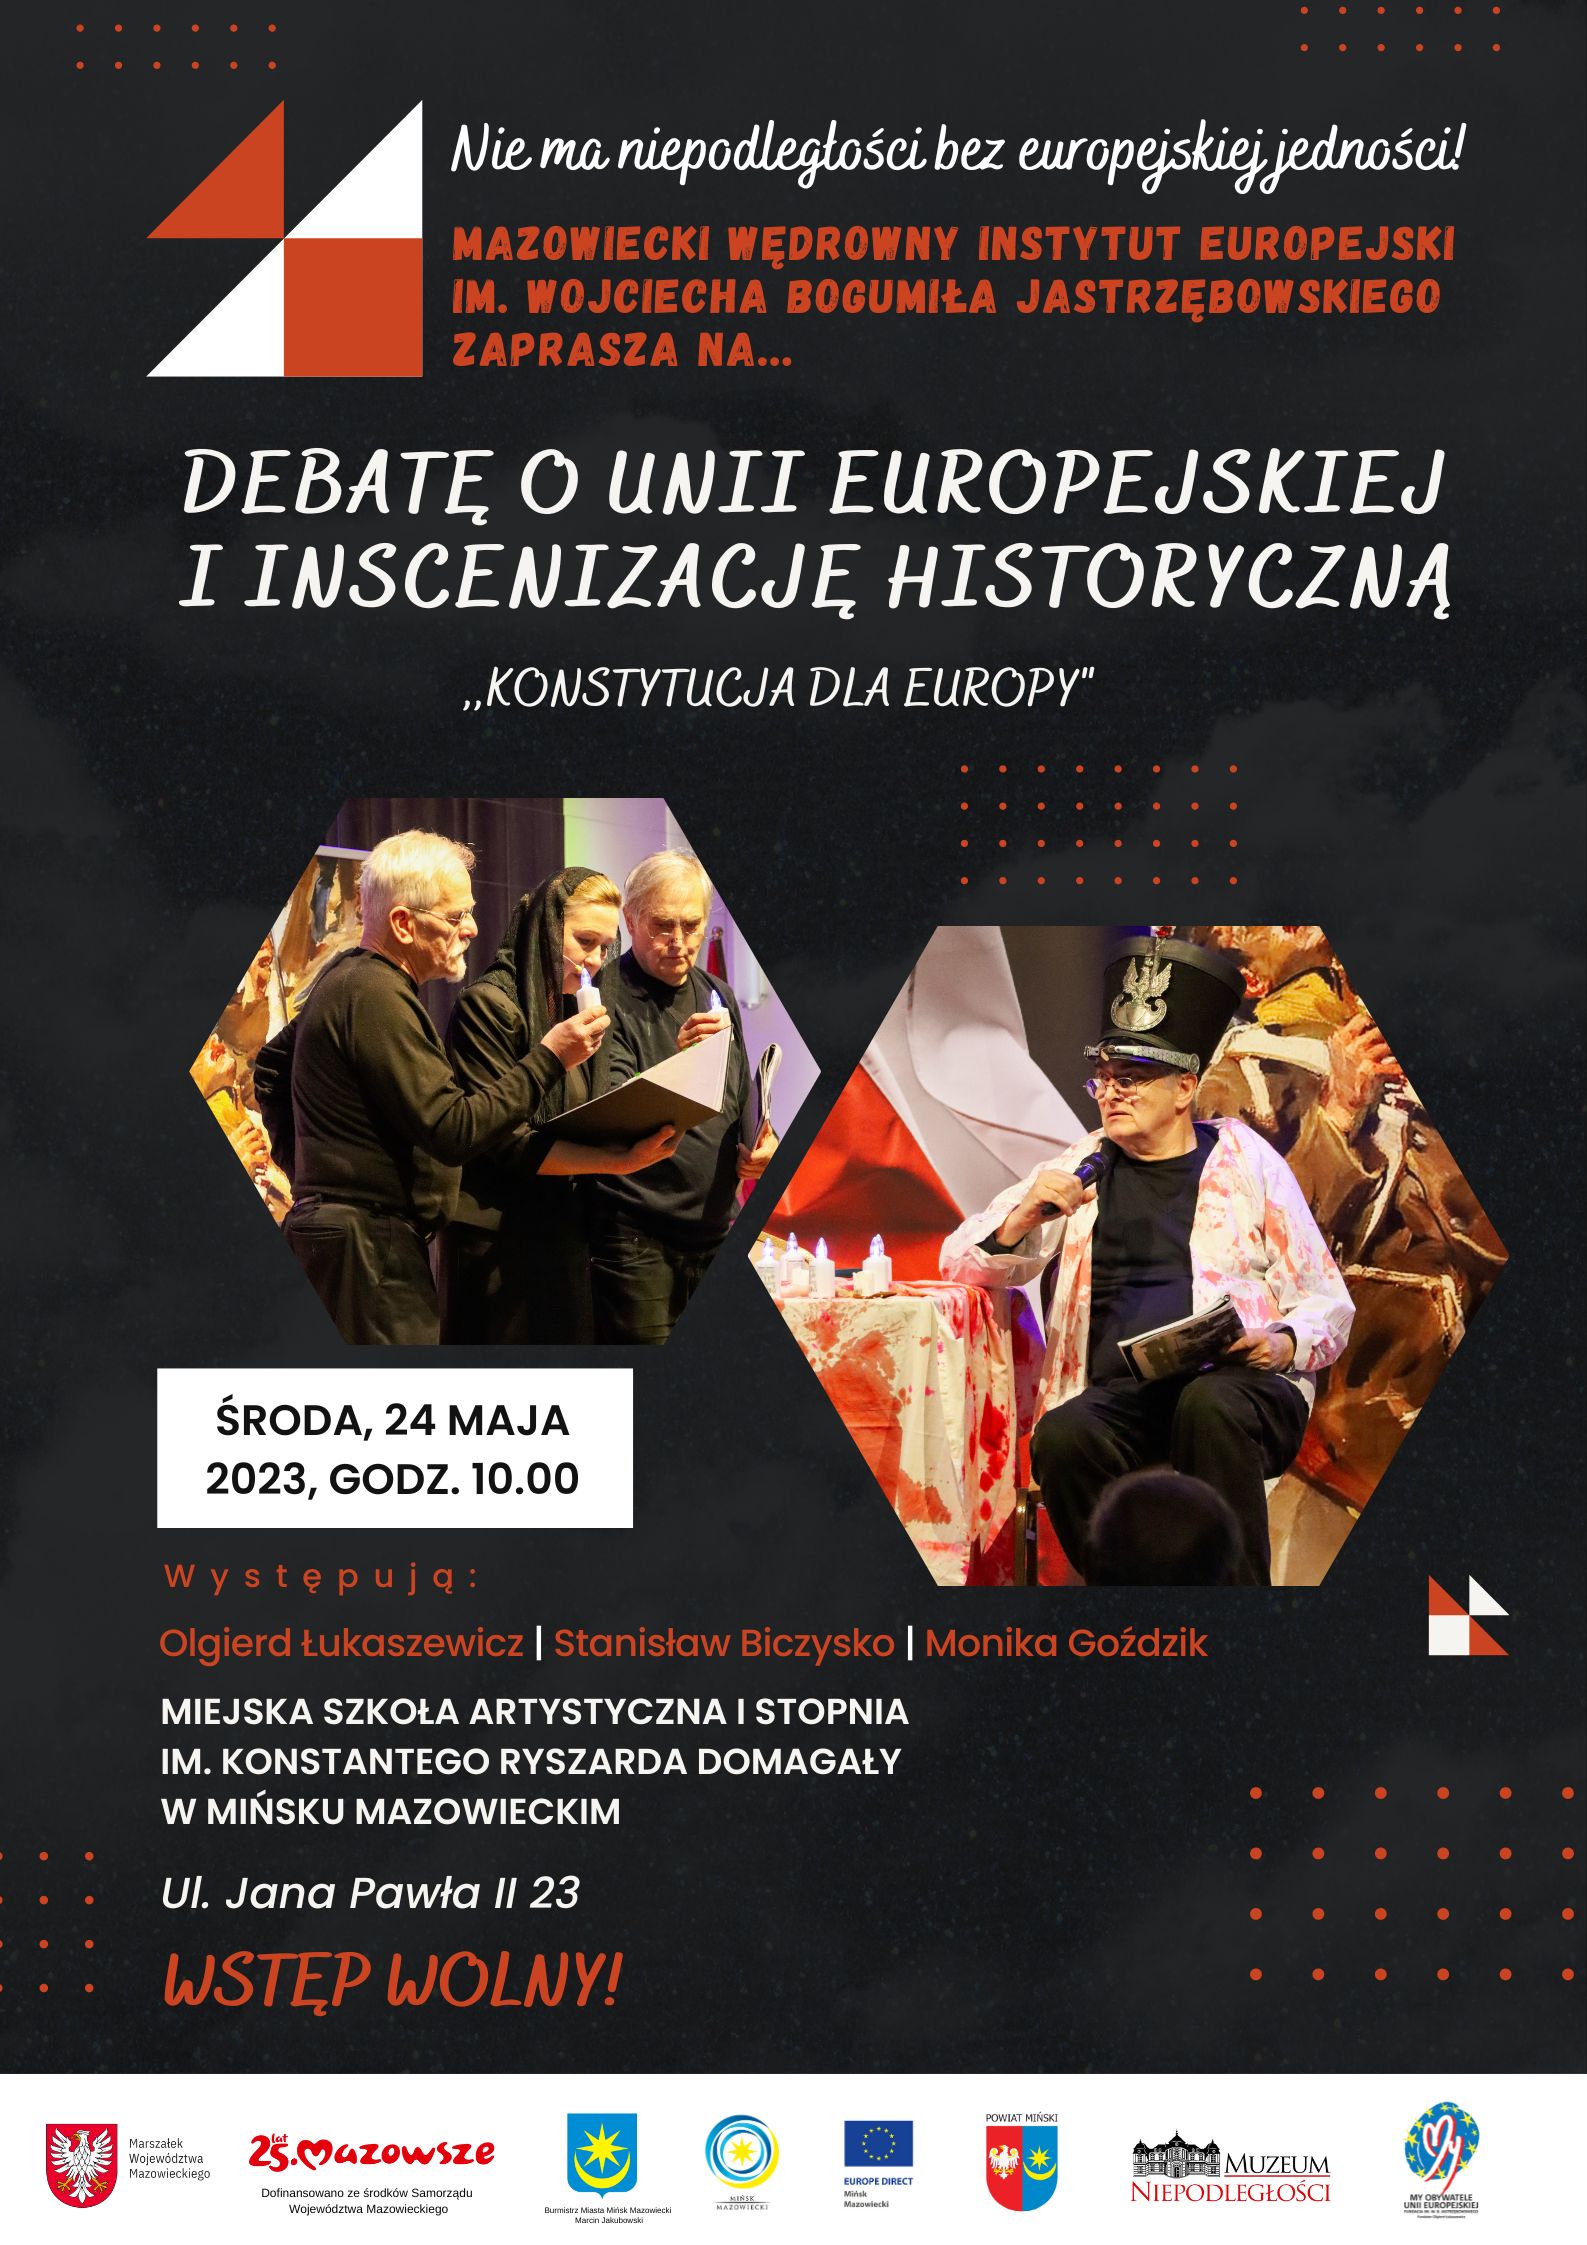 Zaproszenie o debacie Unii Europejskiej